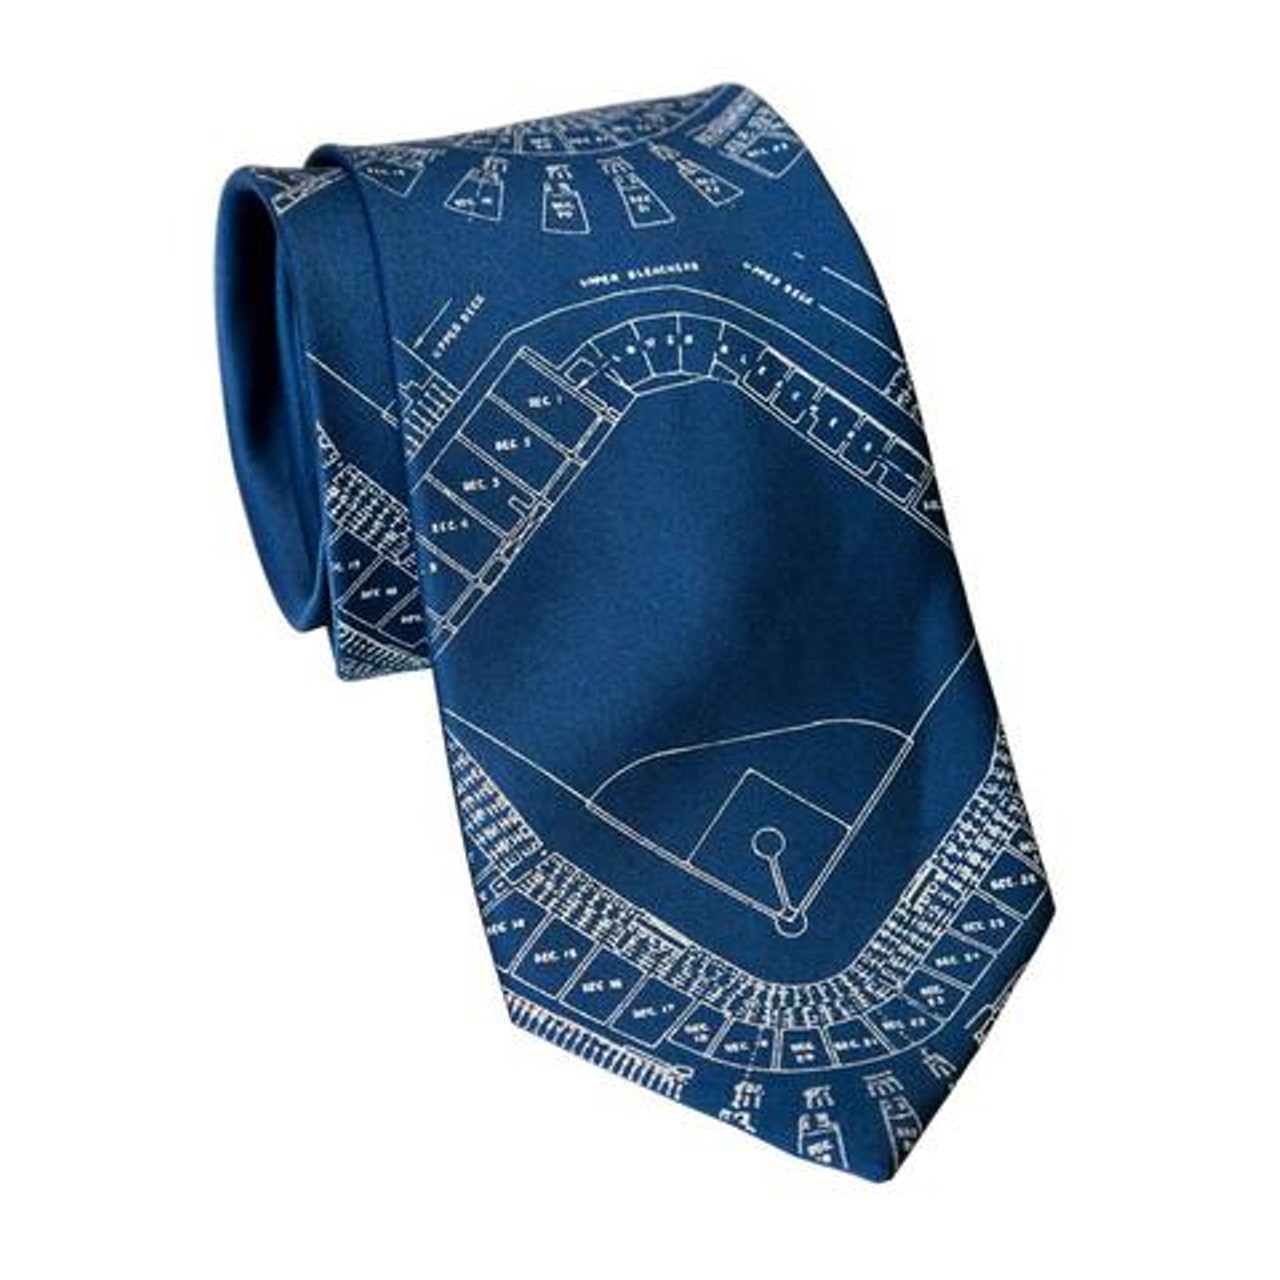 Navin Field blueprint necktie, $36.